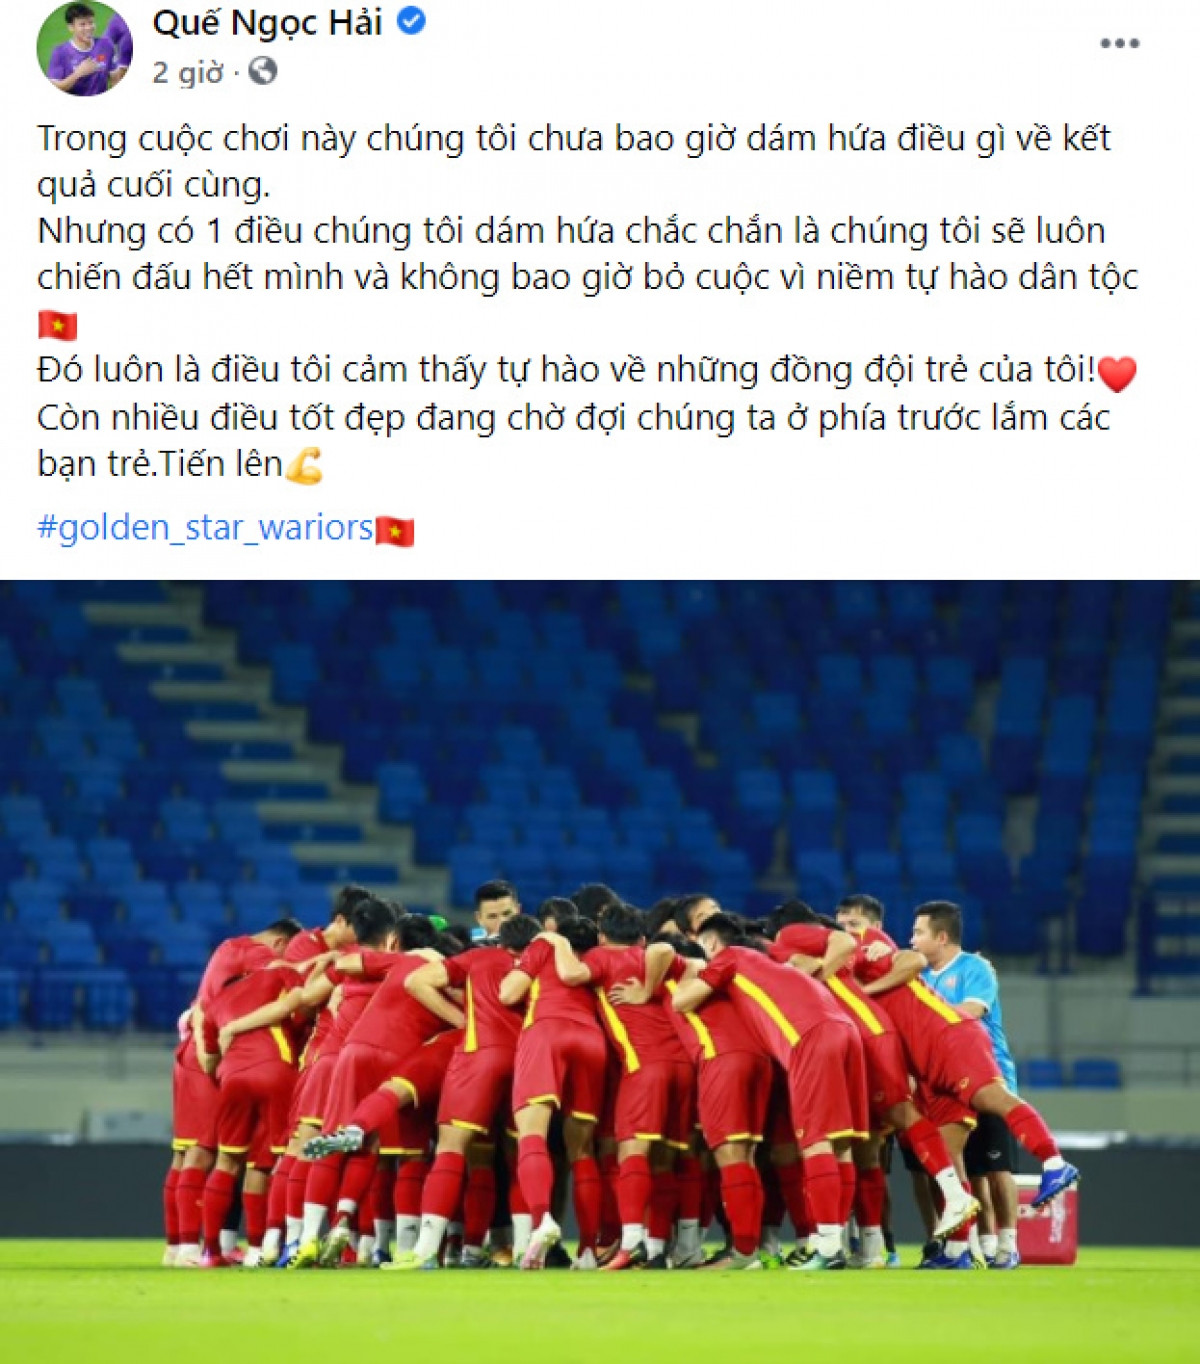 Đội trưởng Quế Ngọc Hải thay mặt ĐT Việt Nam hứa sẽ chiến đấu hết mình trong mọi trận đấu. 